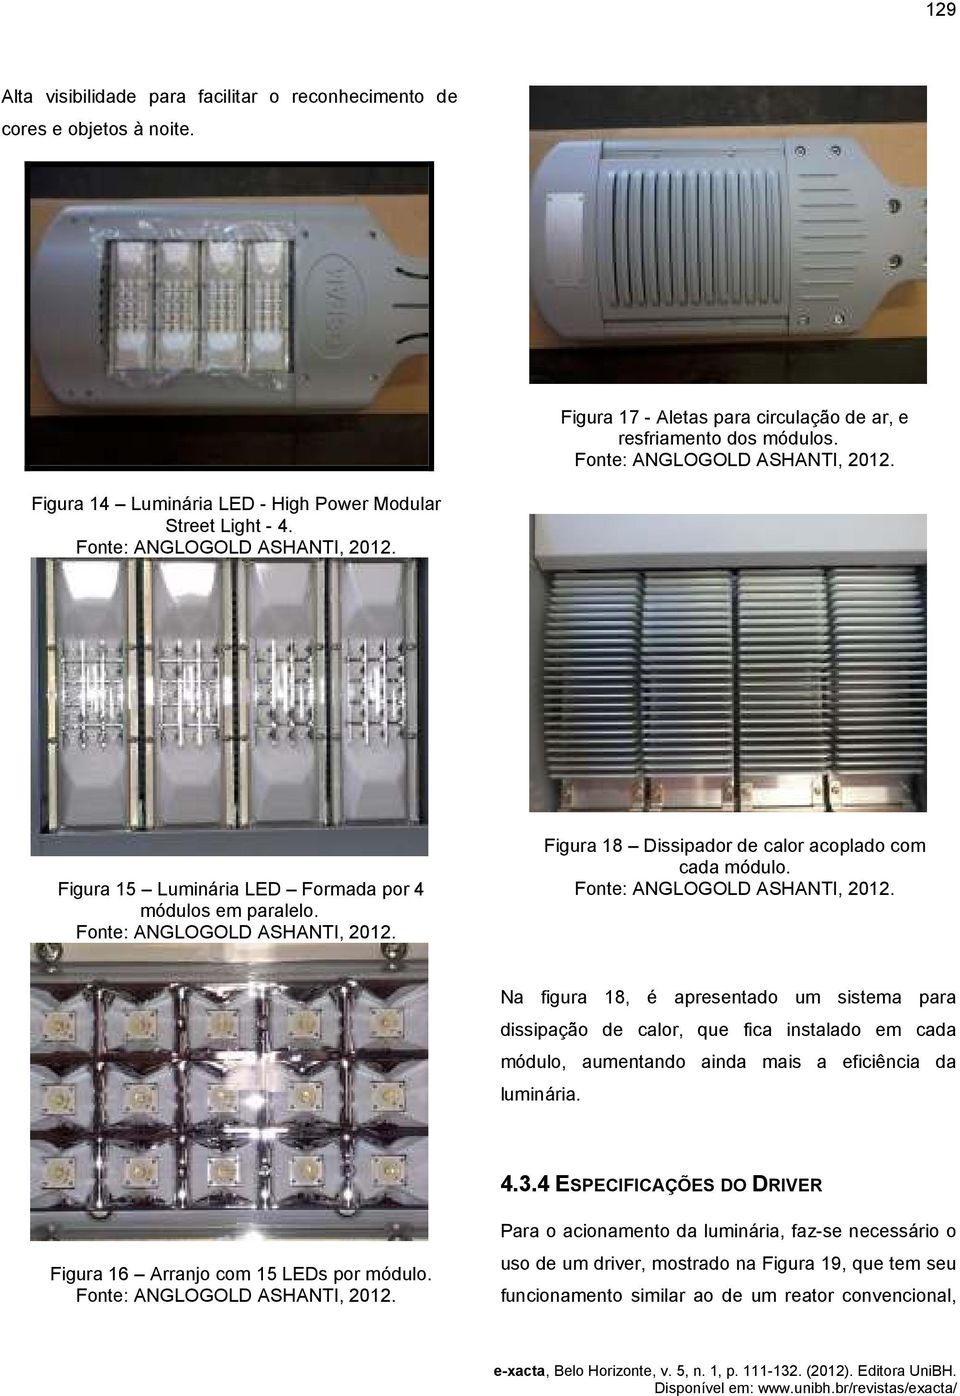 Na figura 18, é apresentado um sistema para dissipação de calor, que fica instalado em cada módulo, aumentando ainda mais a eficiência da luminária. 4.3.